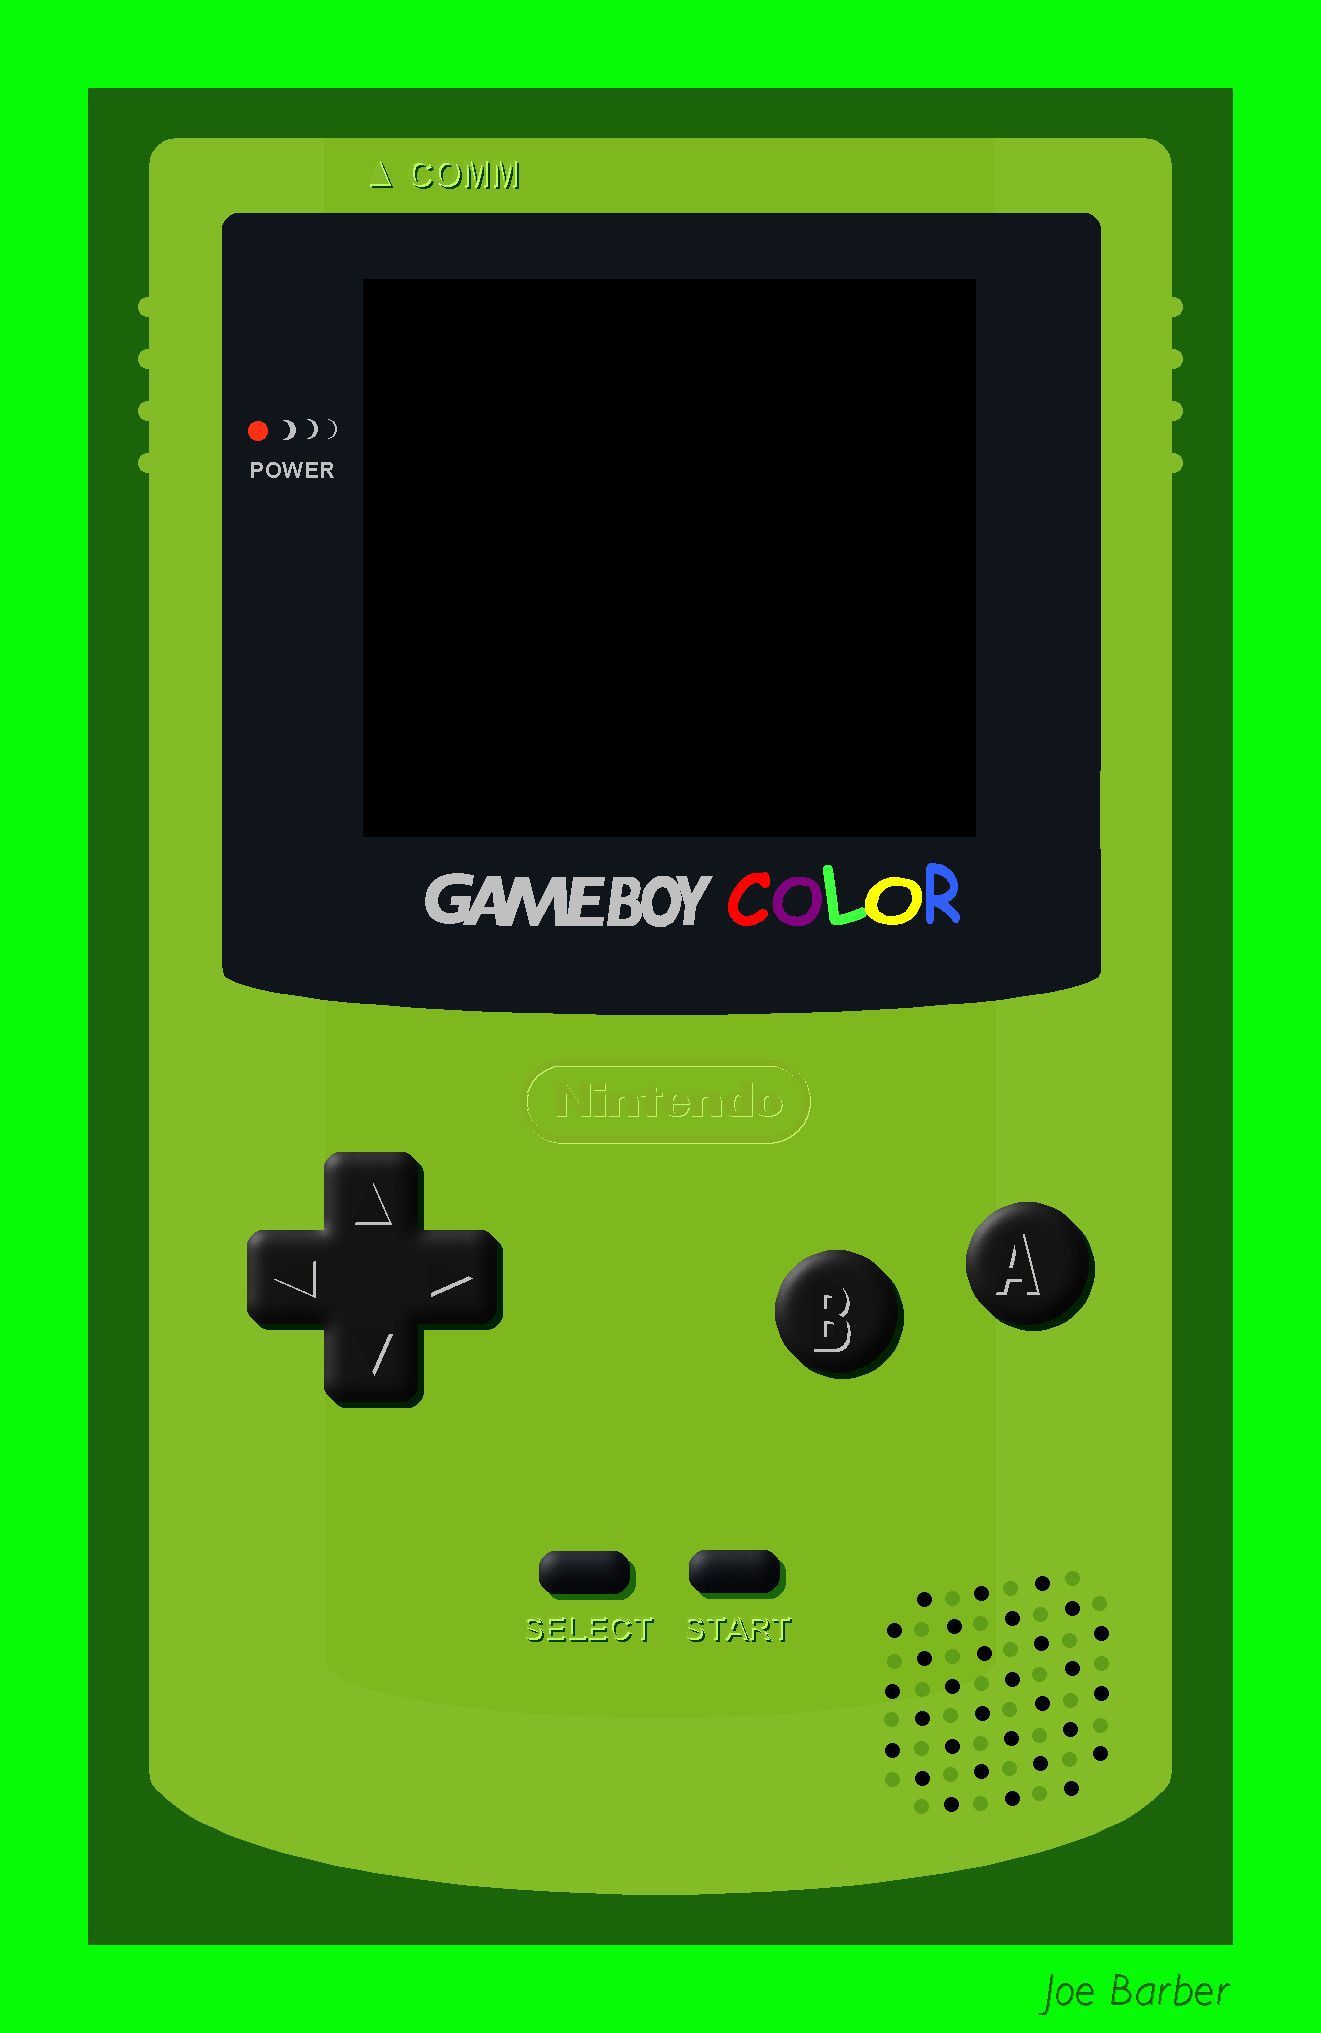 Game Boy Color: Hãy cùng nhìn lại ký ức tuổi thơ của bạn với Game Boy Color, chiếc máy chơi game cầm tay đã đi vào huyền thoại. Ngắm nhìn các bản game kinh điển trên chiếc máy này và cảm nhận sự thăng hoa của niềm đam mê tuổi thơ.